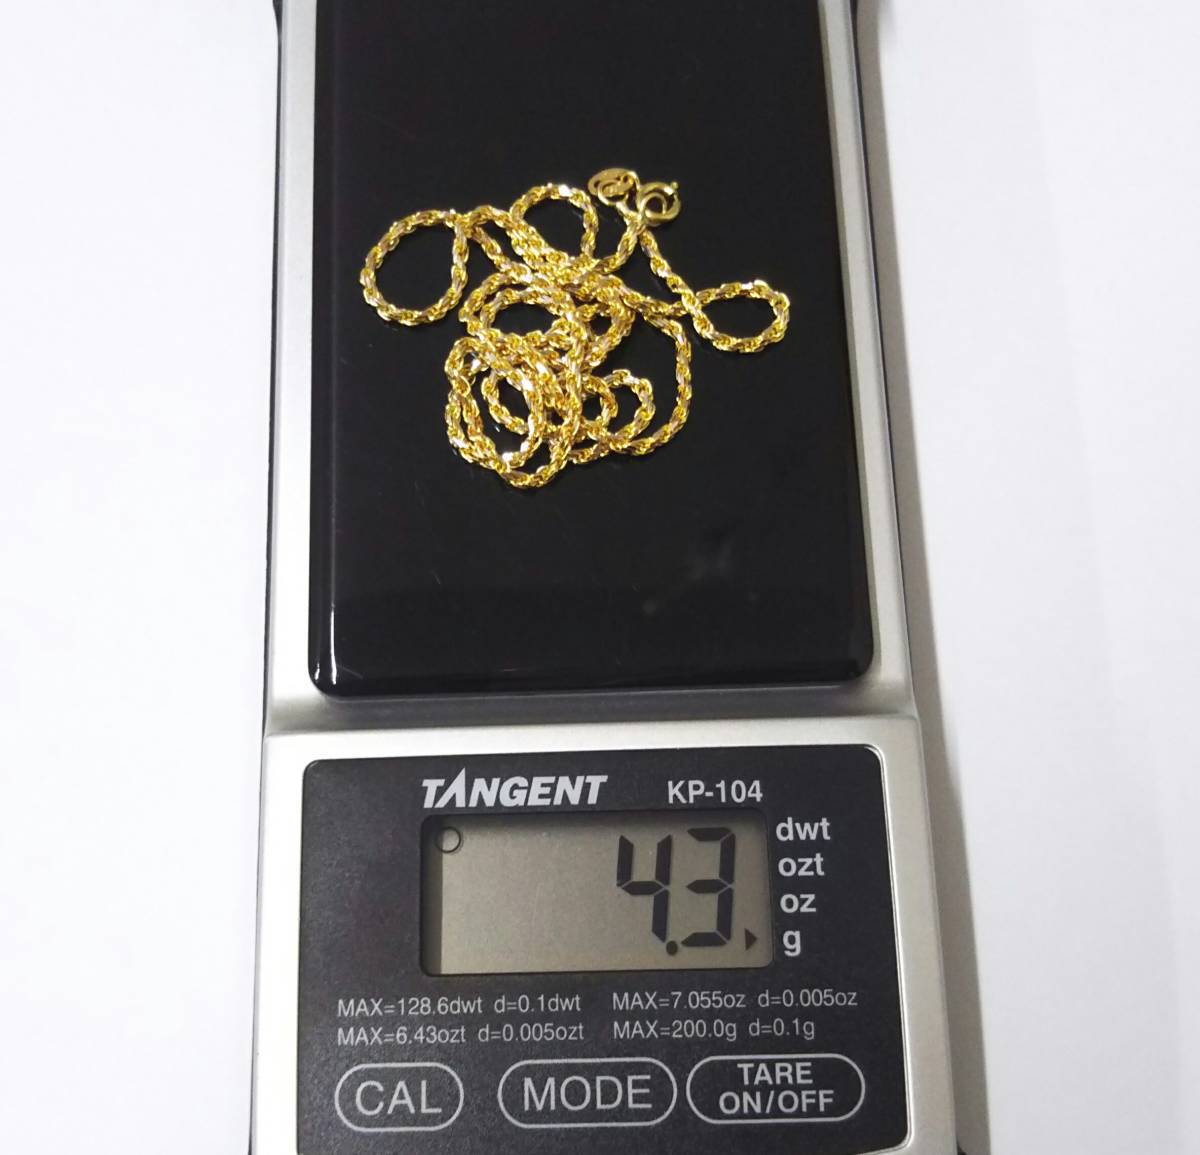 [ чистка settled ]K18 полная масса примерно 4.3g примерно 41cm кручение дизайн Gold колье 